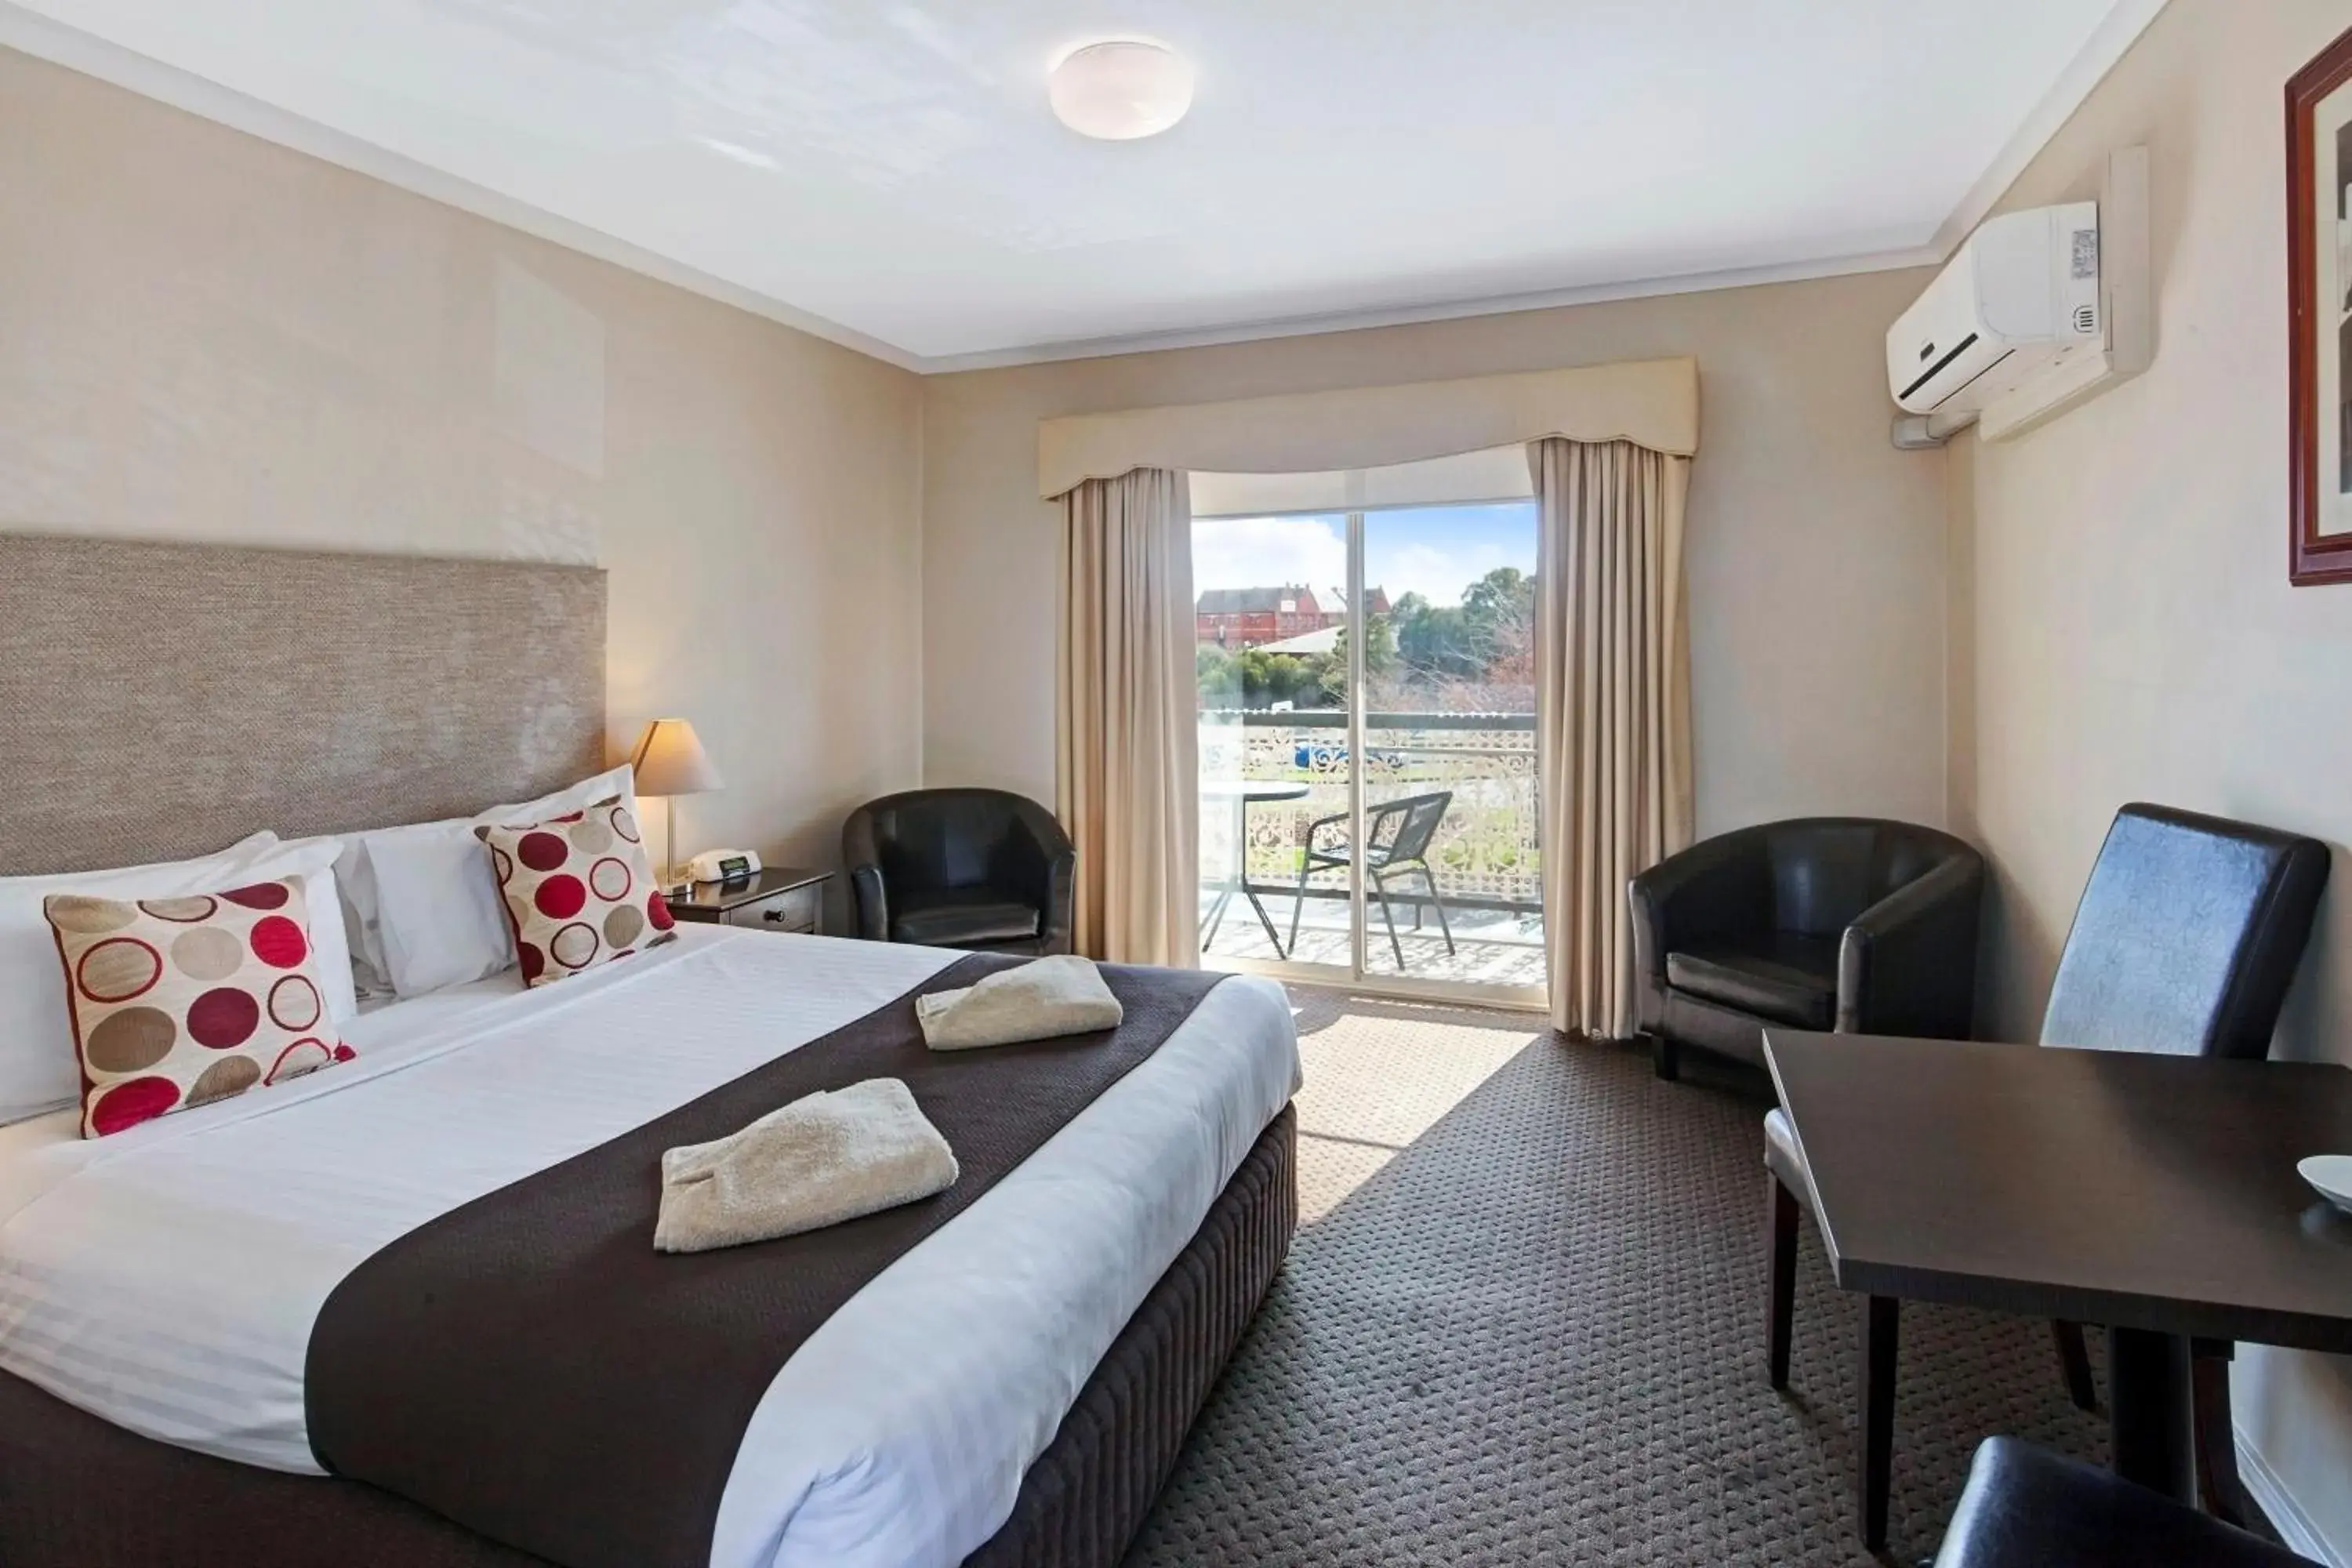 Day, Room Photo in Central City Motor Inn Ballarat